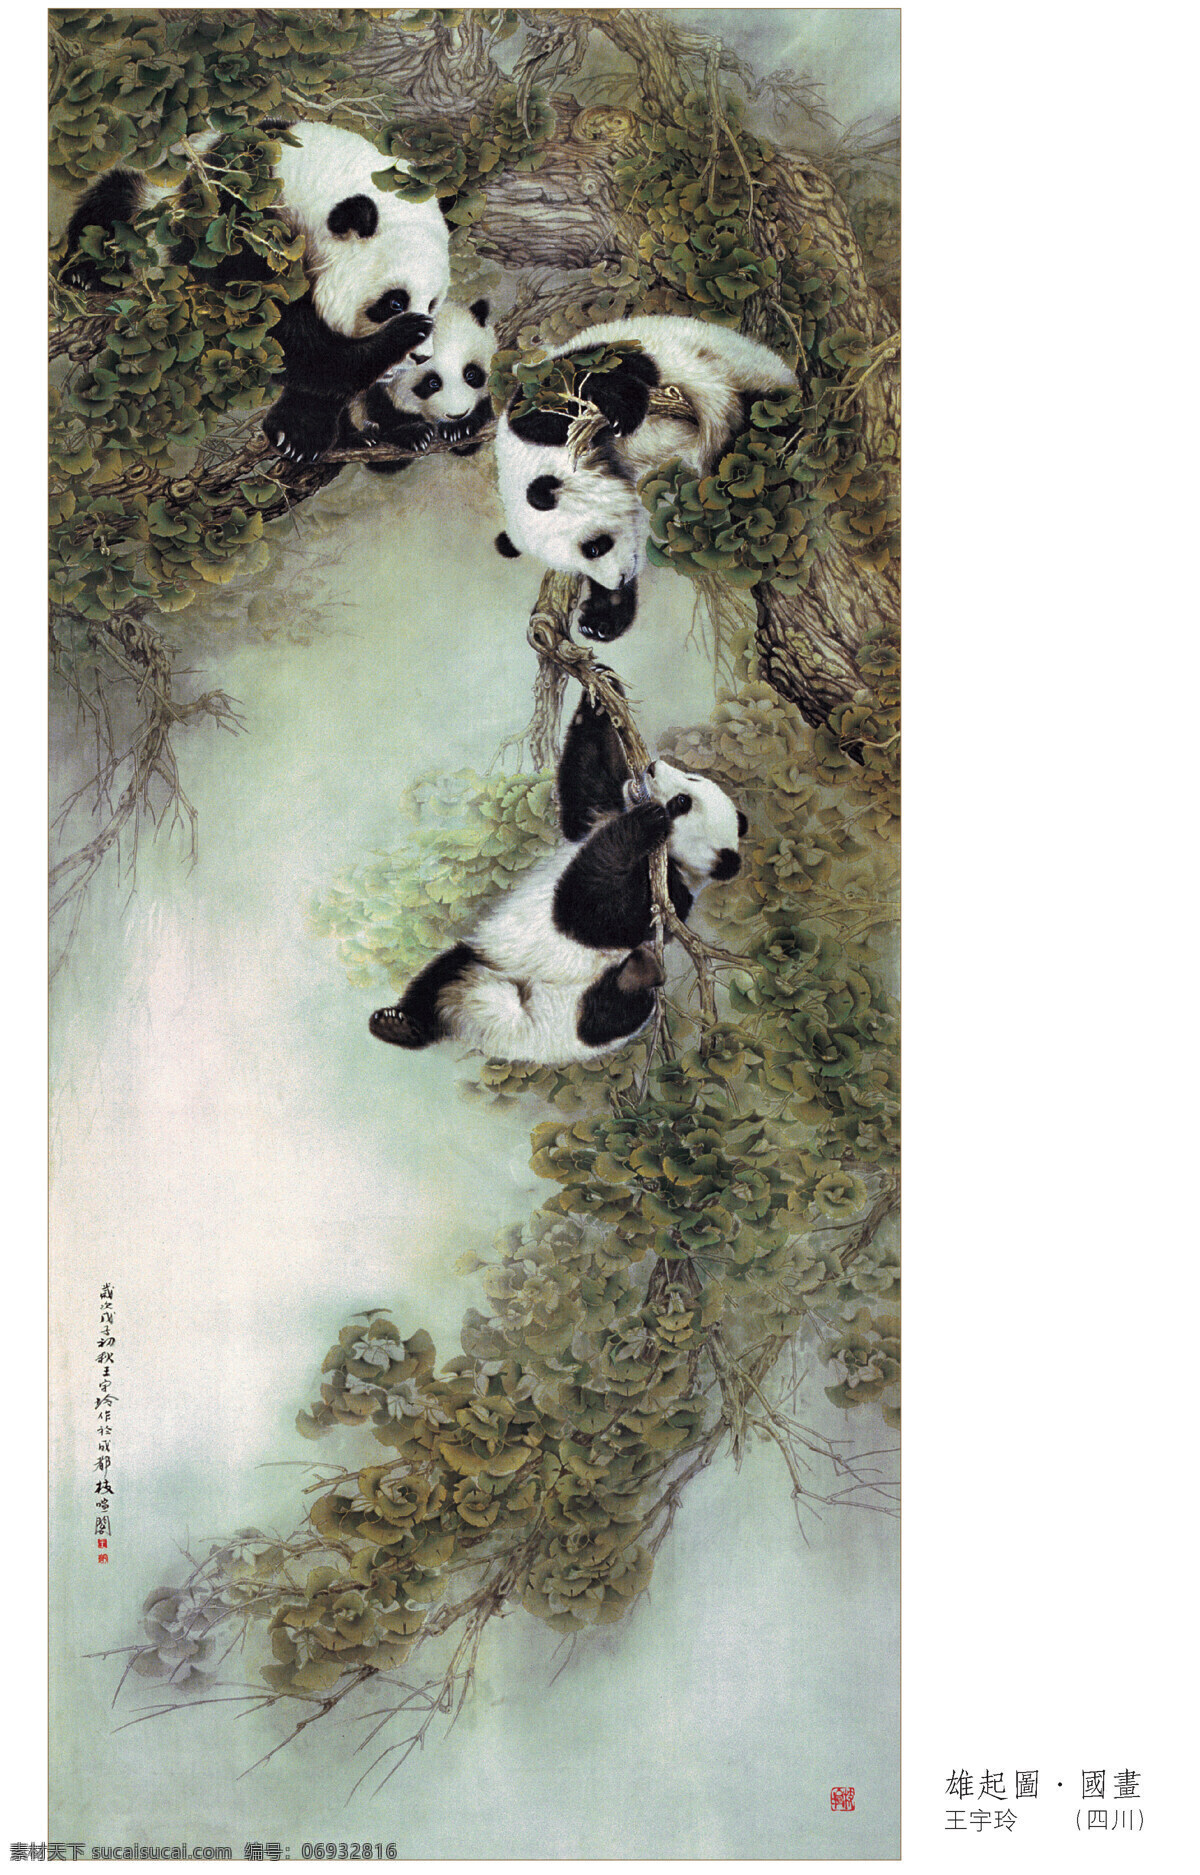 雄起图画画 雄起图 画画 大熊猫 艺术作品 王宇玲作品 四川 文化艺术 绘画书法 设计图库